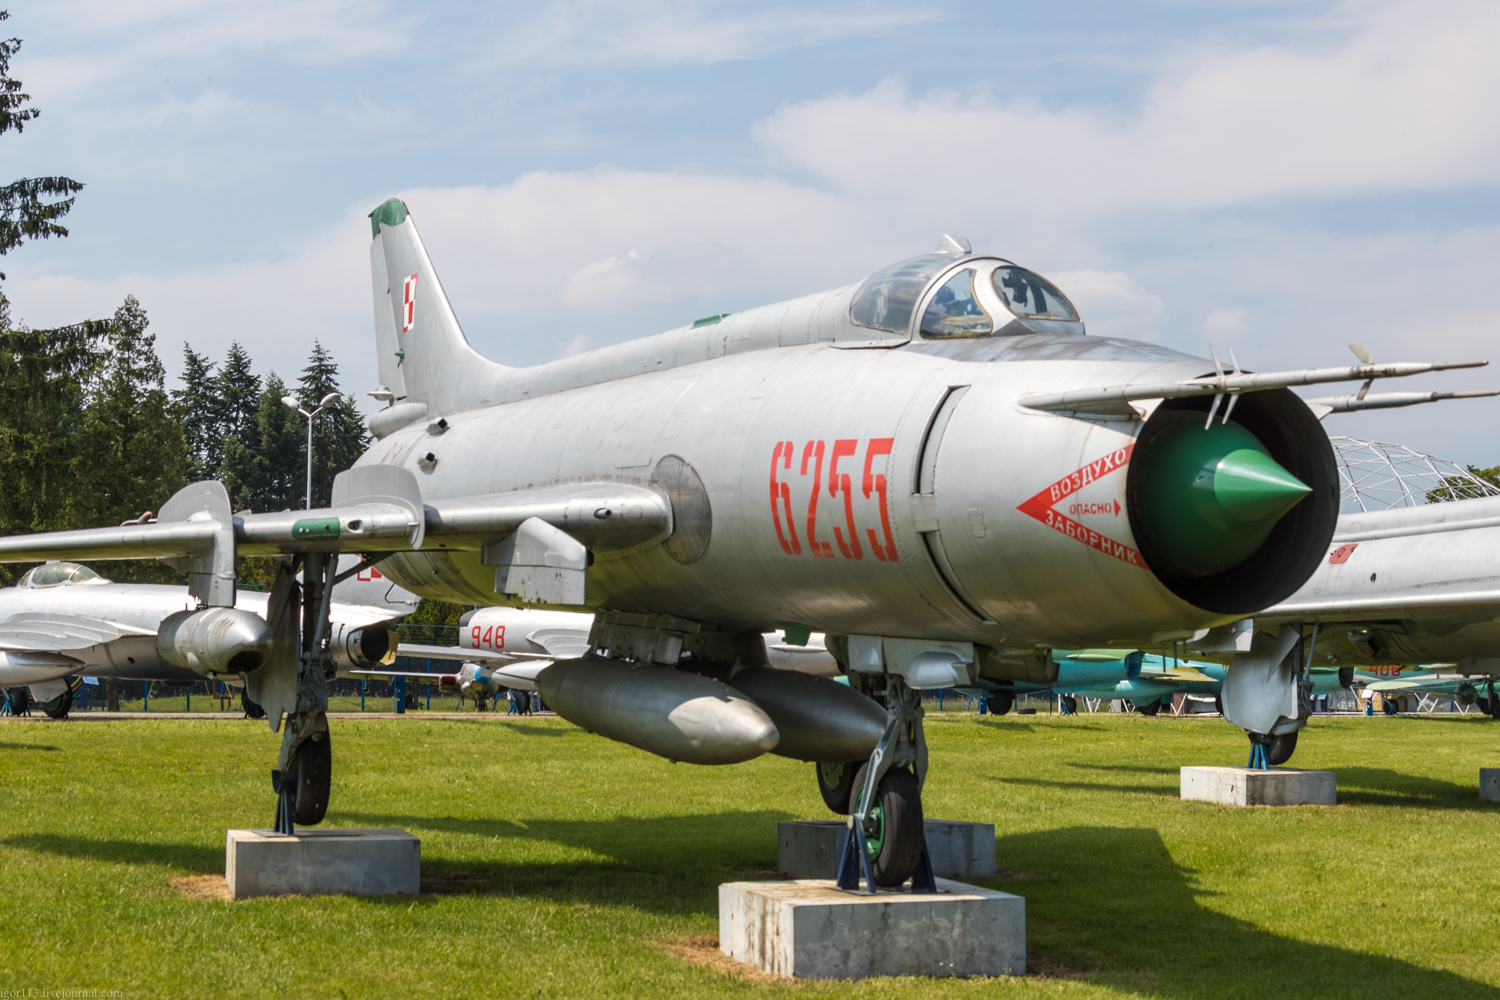 Museum Sil Powietrznych в Deblin : истребитель-бомбардировщик Су-20 (экспортный вариант Су-17М).